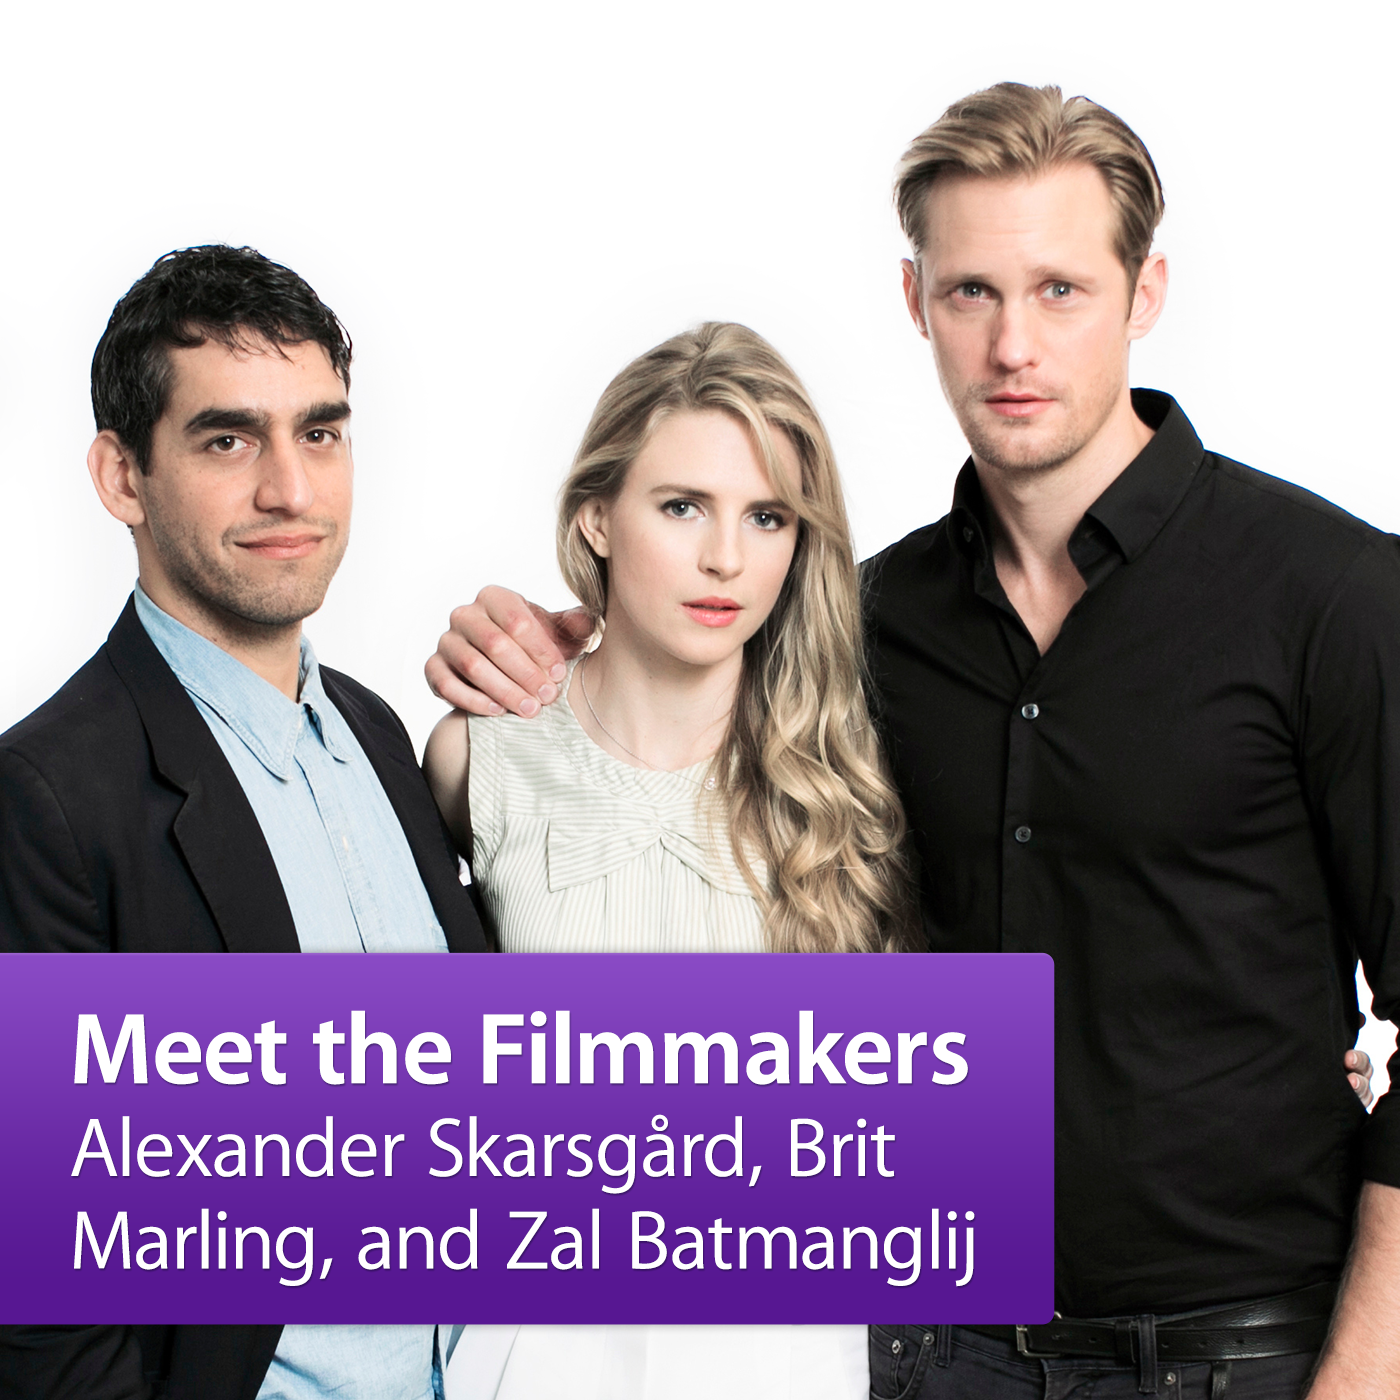 Alexander Skarsgård, Brit Marling, and Zal Batmanglij: Meet the Filmmakers